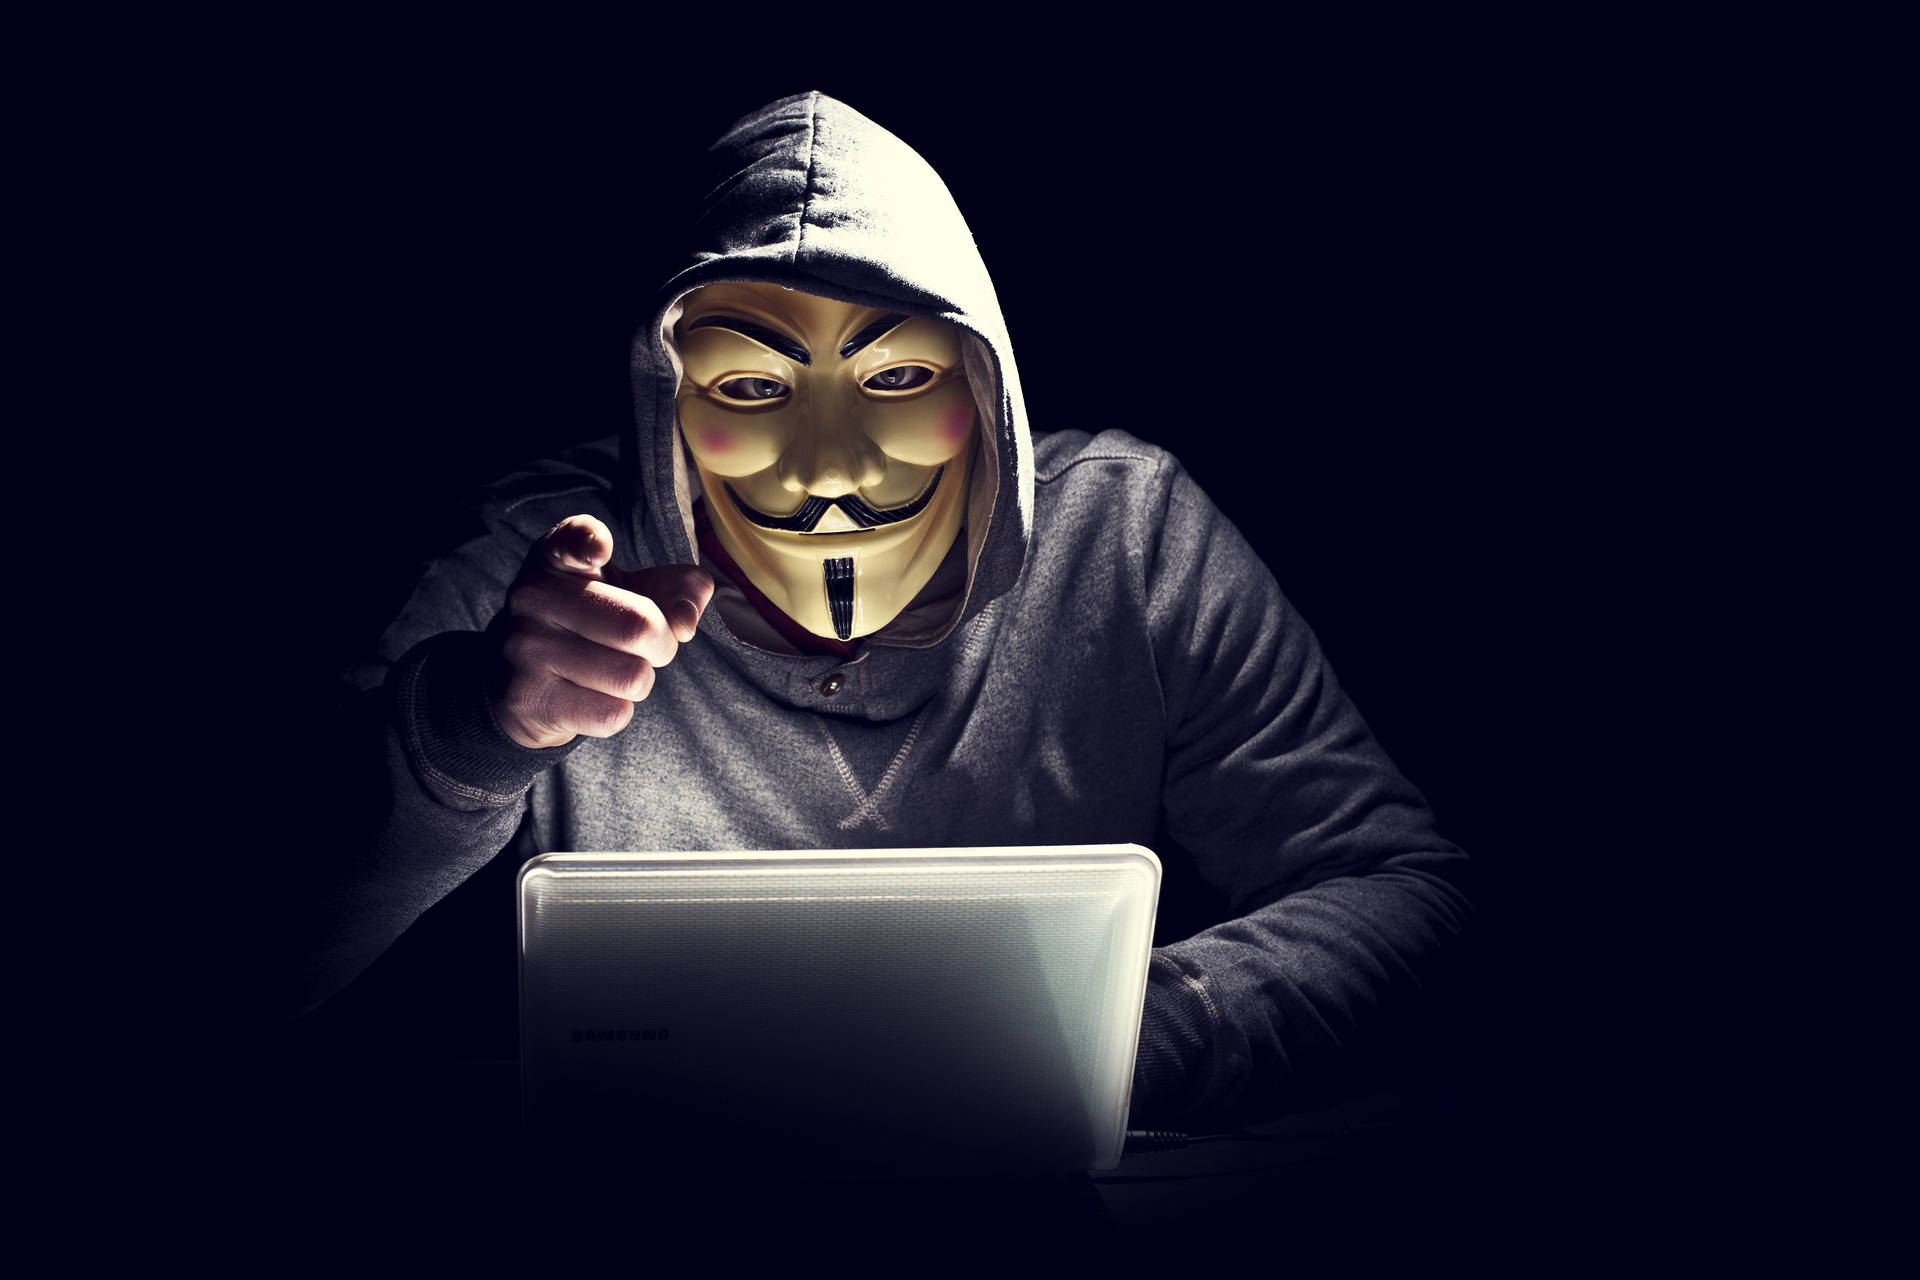 Dark Laptop Hacker Guy Fawkes